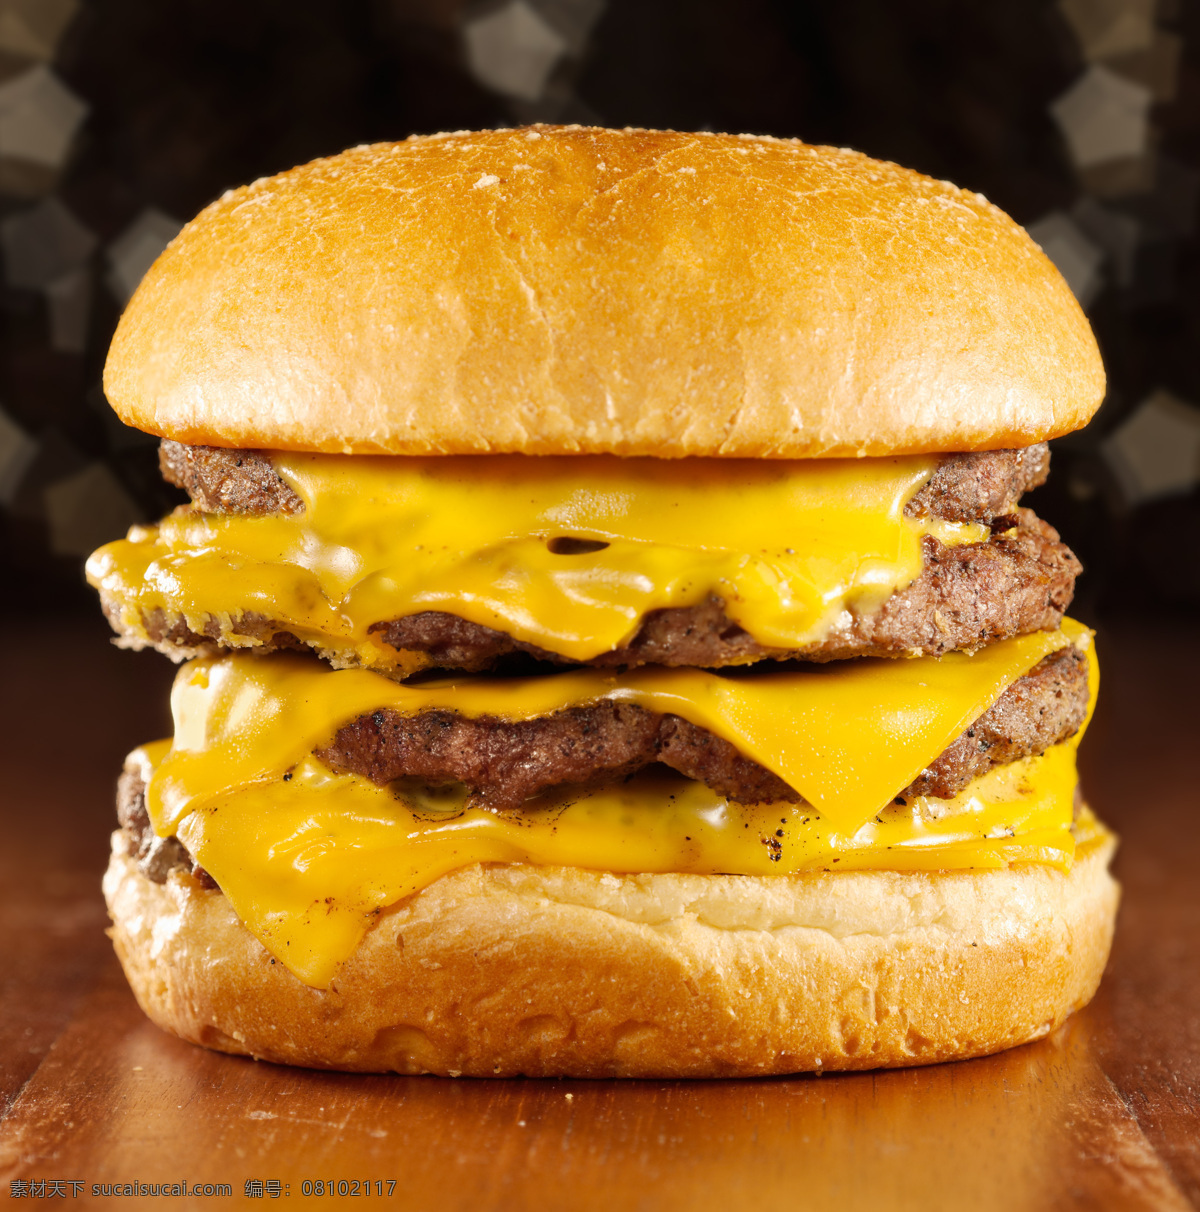 美食 美味 汉堡包 烘培 面包 餐饮 店铺 广告 海报 宣传单 ps 设计图片合集 餐饮美食 西餐美食